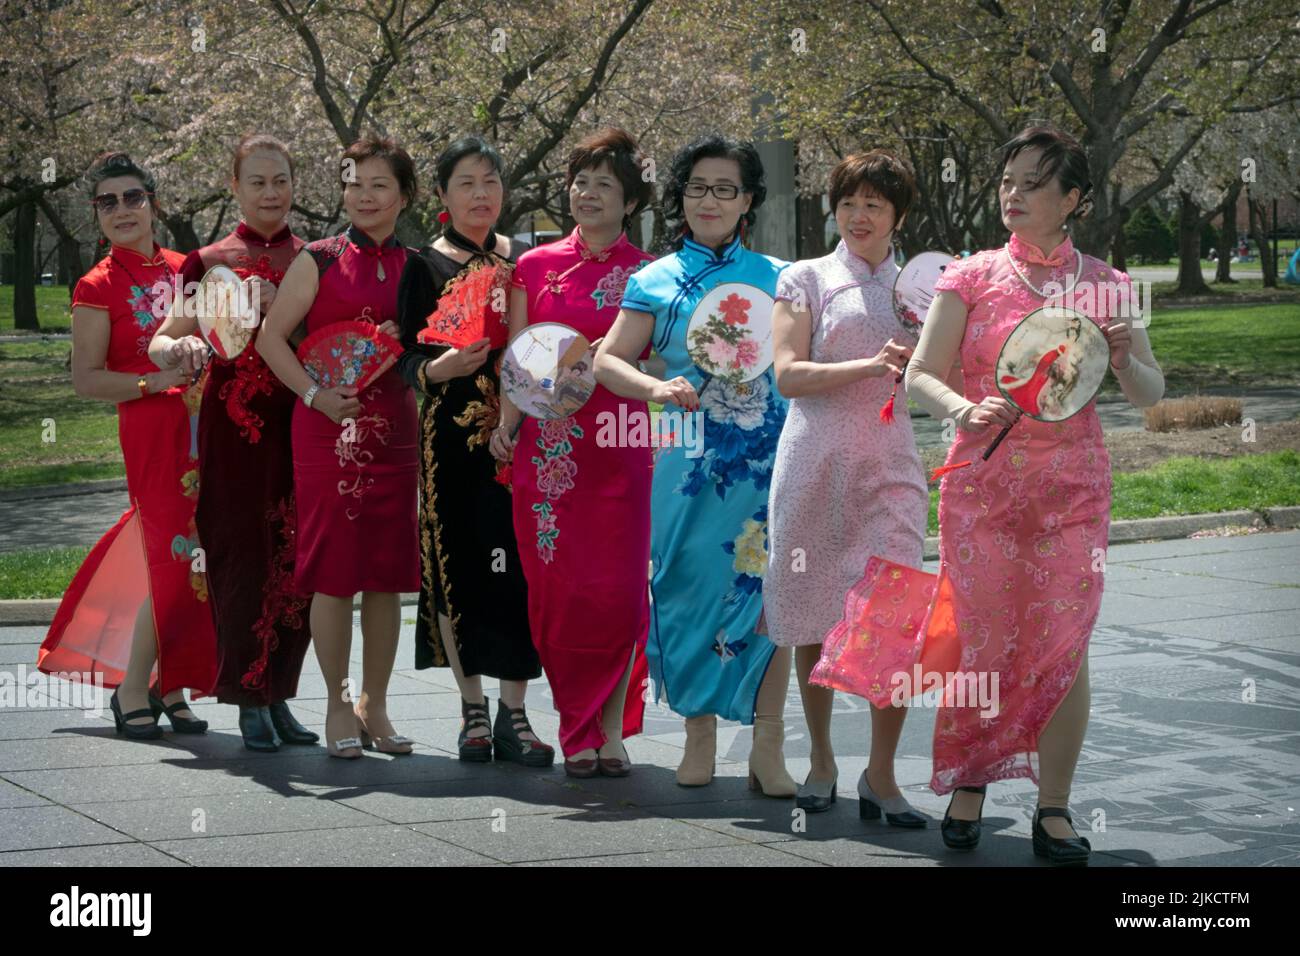 8 chinesisch-amerikanische Mitglieder einer Tanzgruppe posieren für Fotos, die ihre Fans halten. Im Flushing Meadows Corona Park in Queens, New York City. Stockfoto